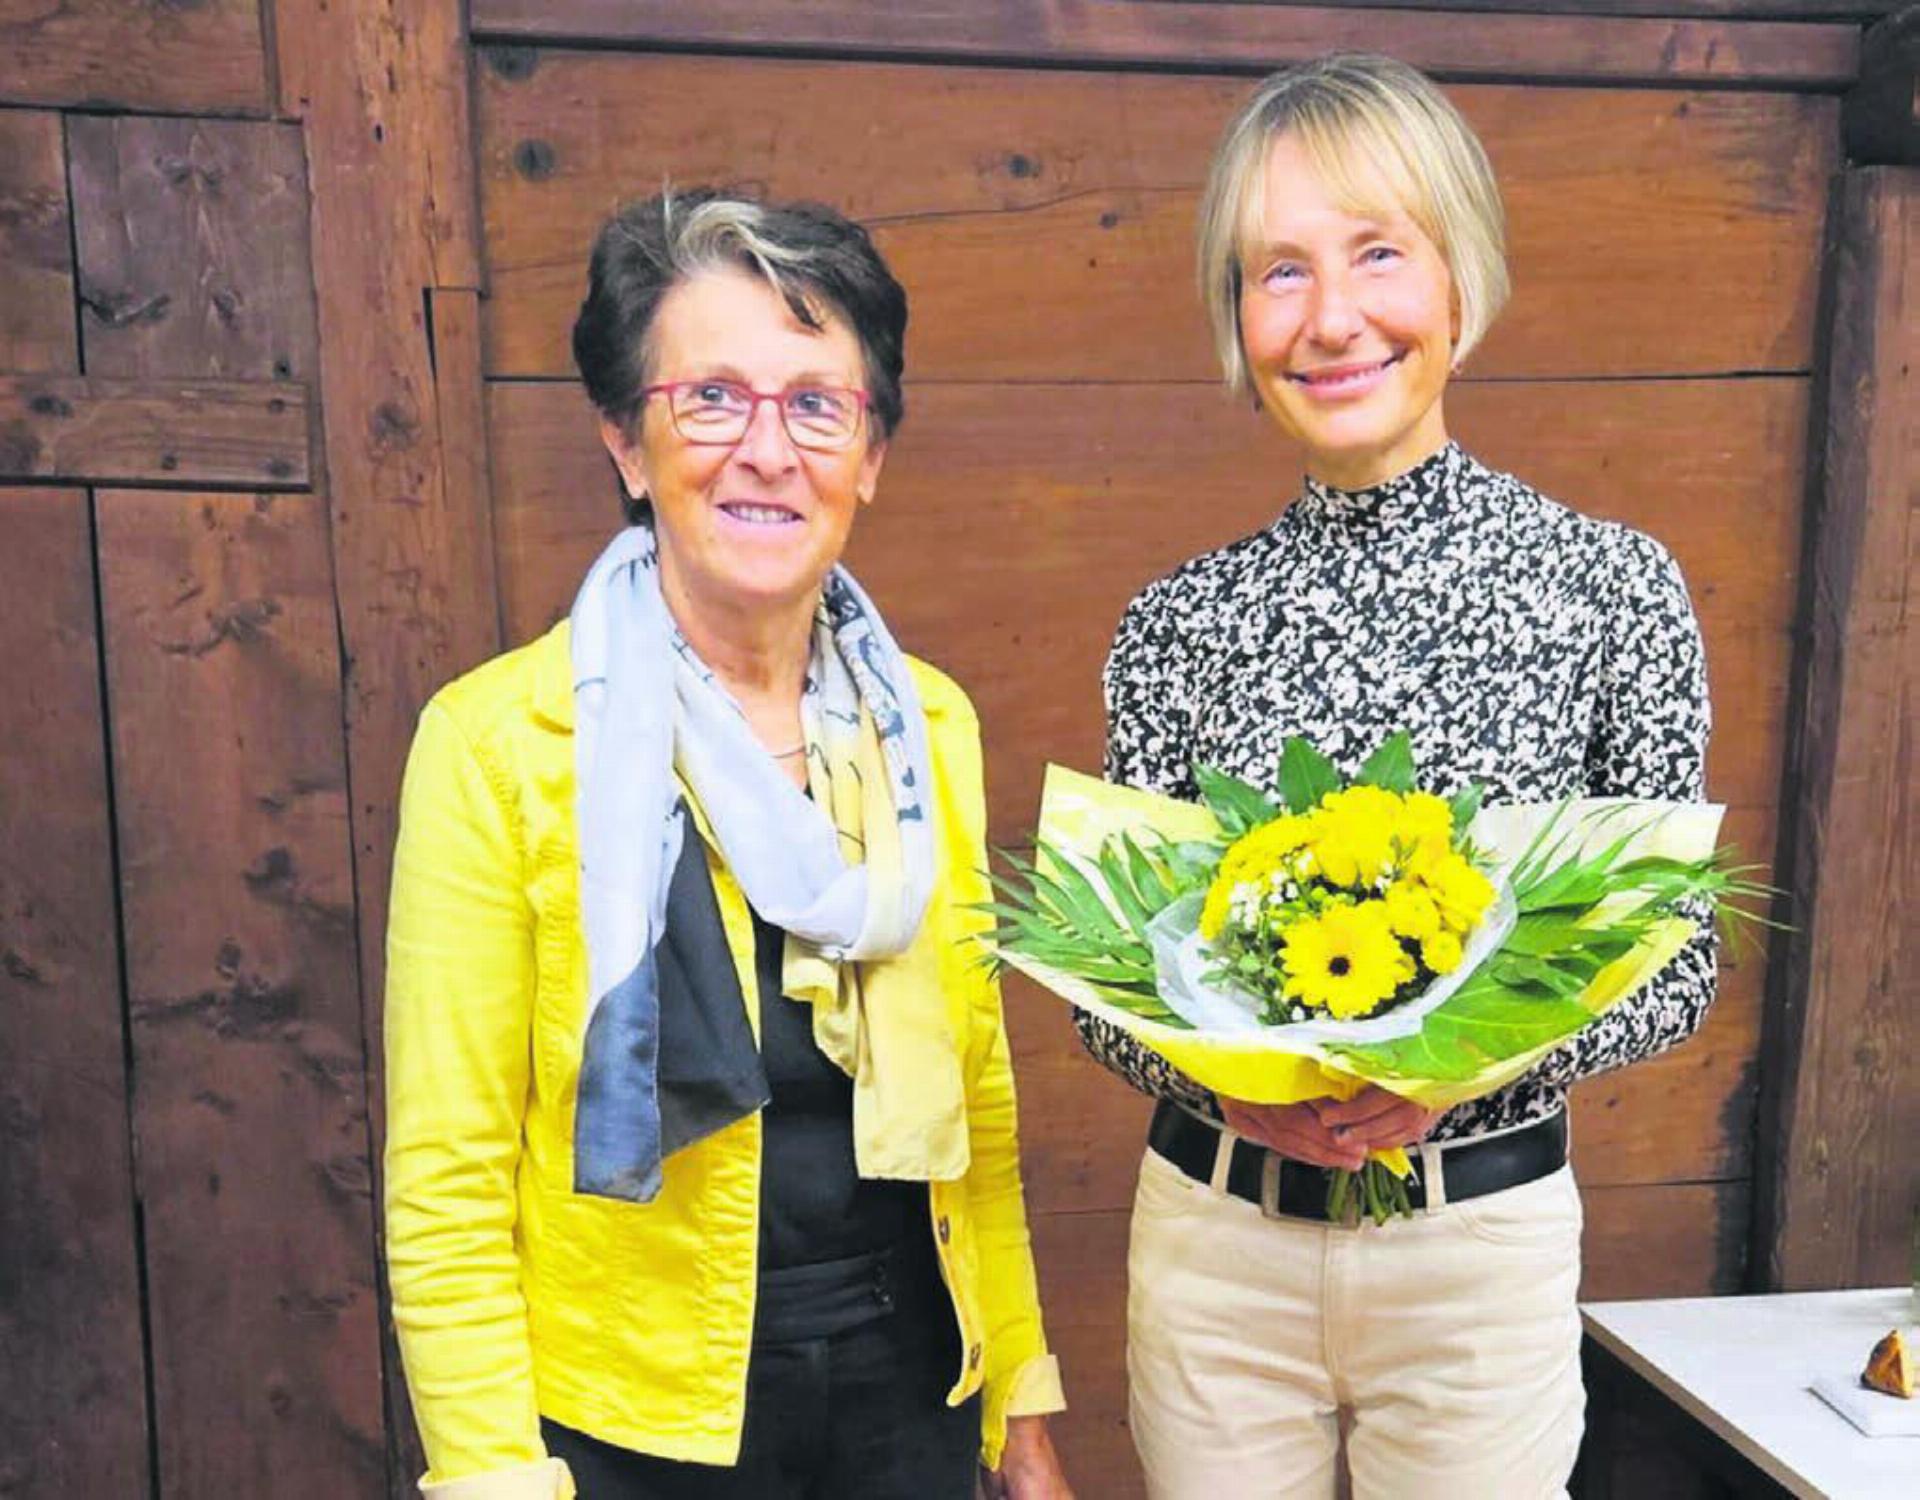 Ein Frauenduo, das sich auf die Zukunft freut: Präsidentin Rosmarie Groux (links) und Elisabeth Graf Pannatier, neue Geschäftsführerin. Bild: zg